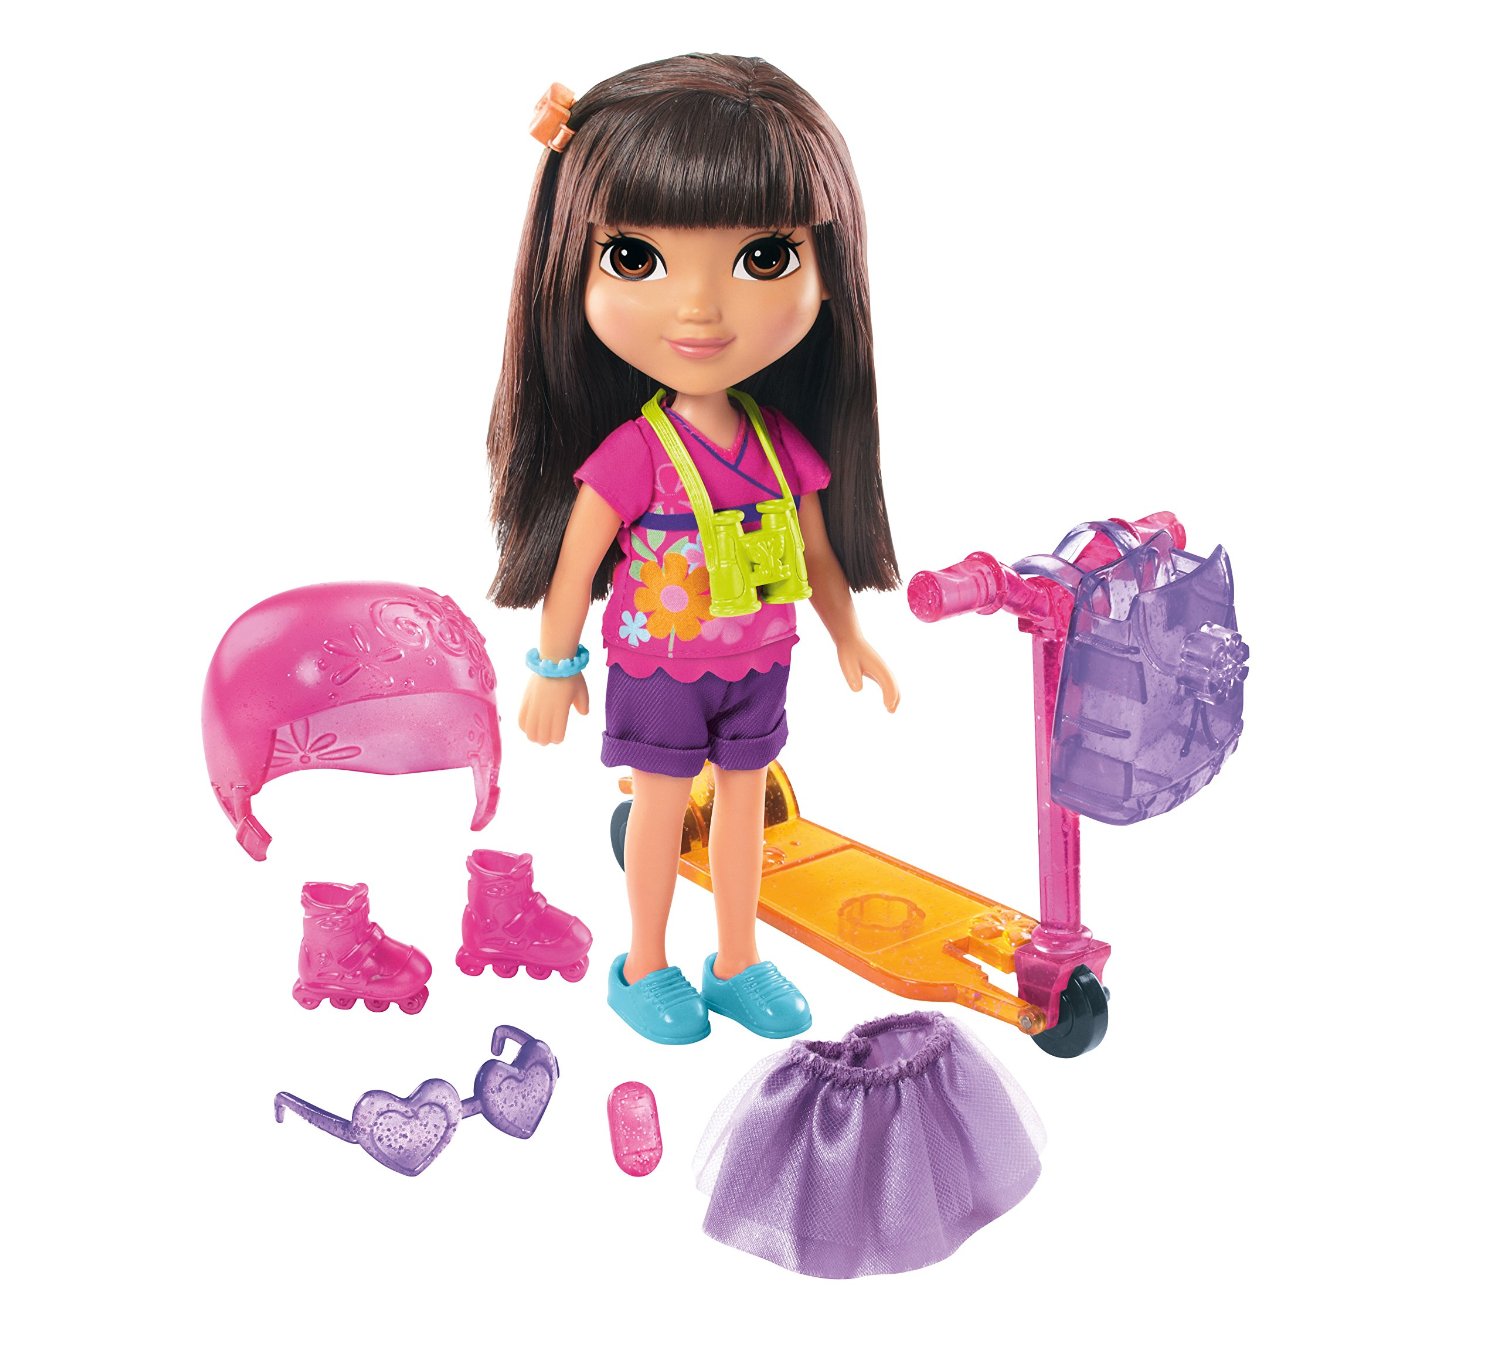 Dora and Friends Dora Loves Adventure Toy